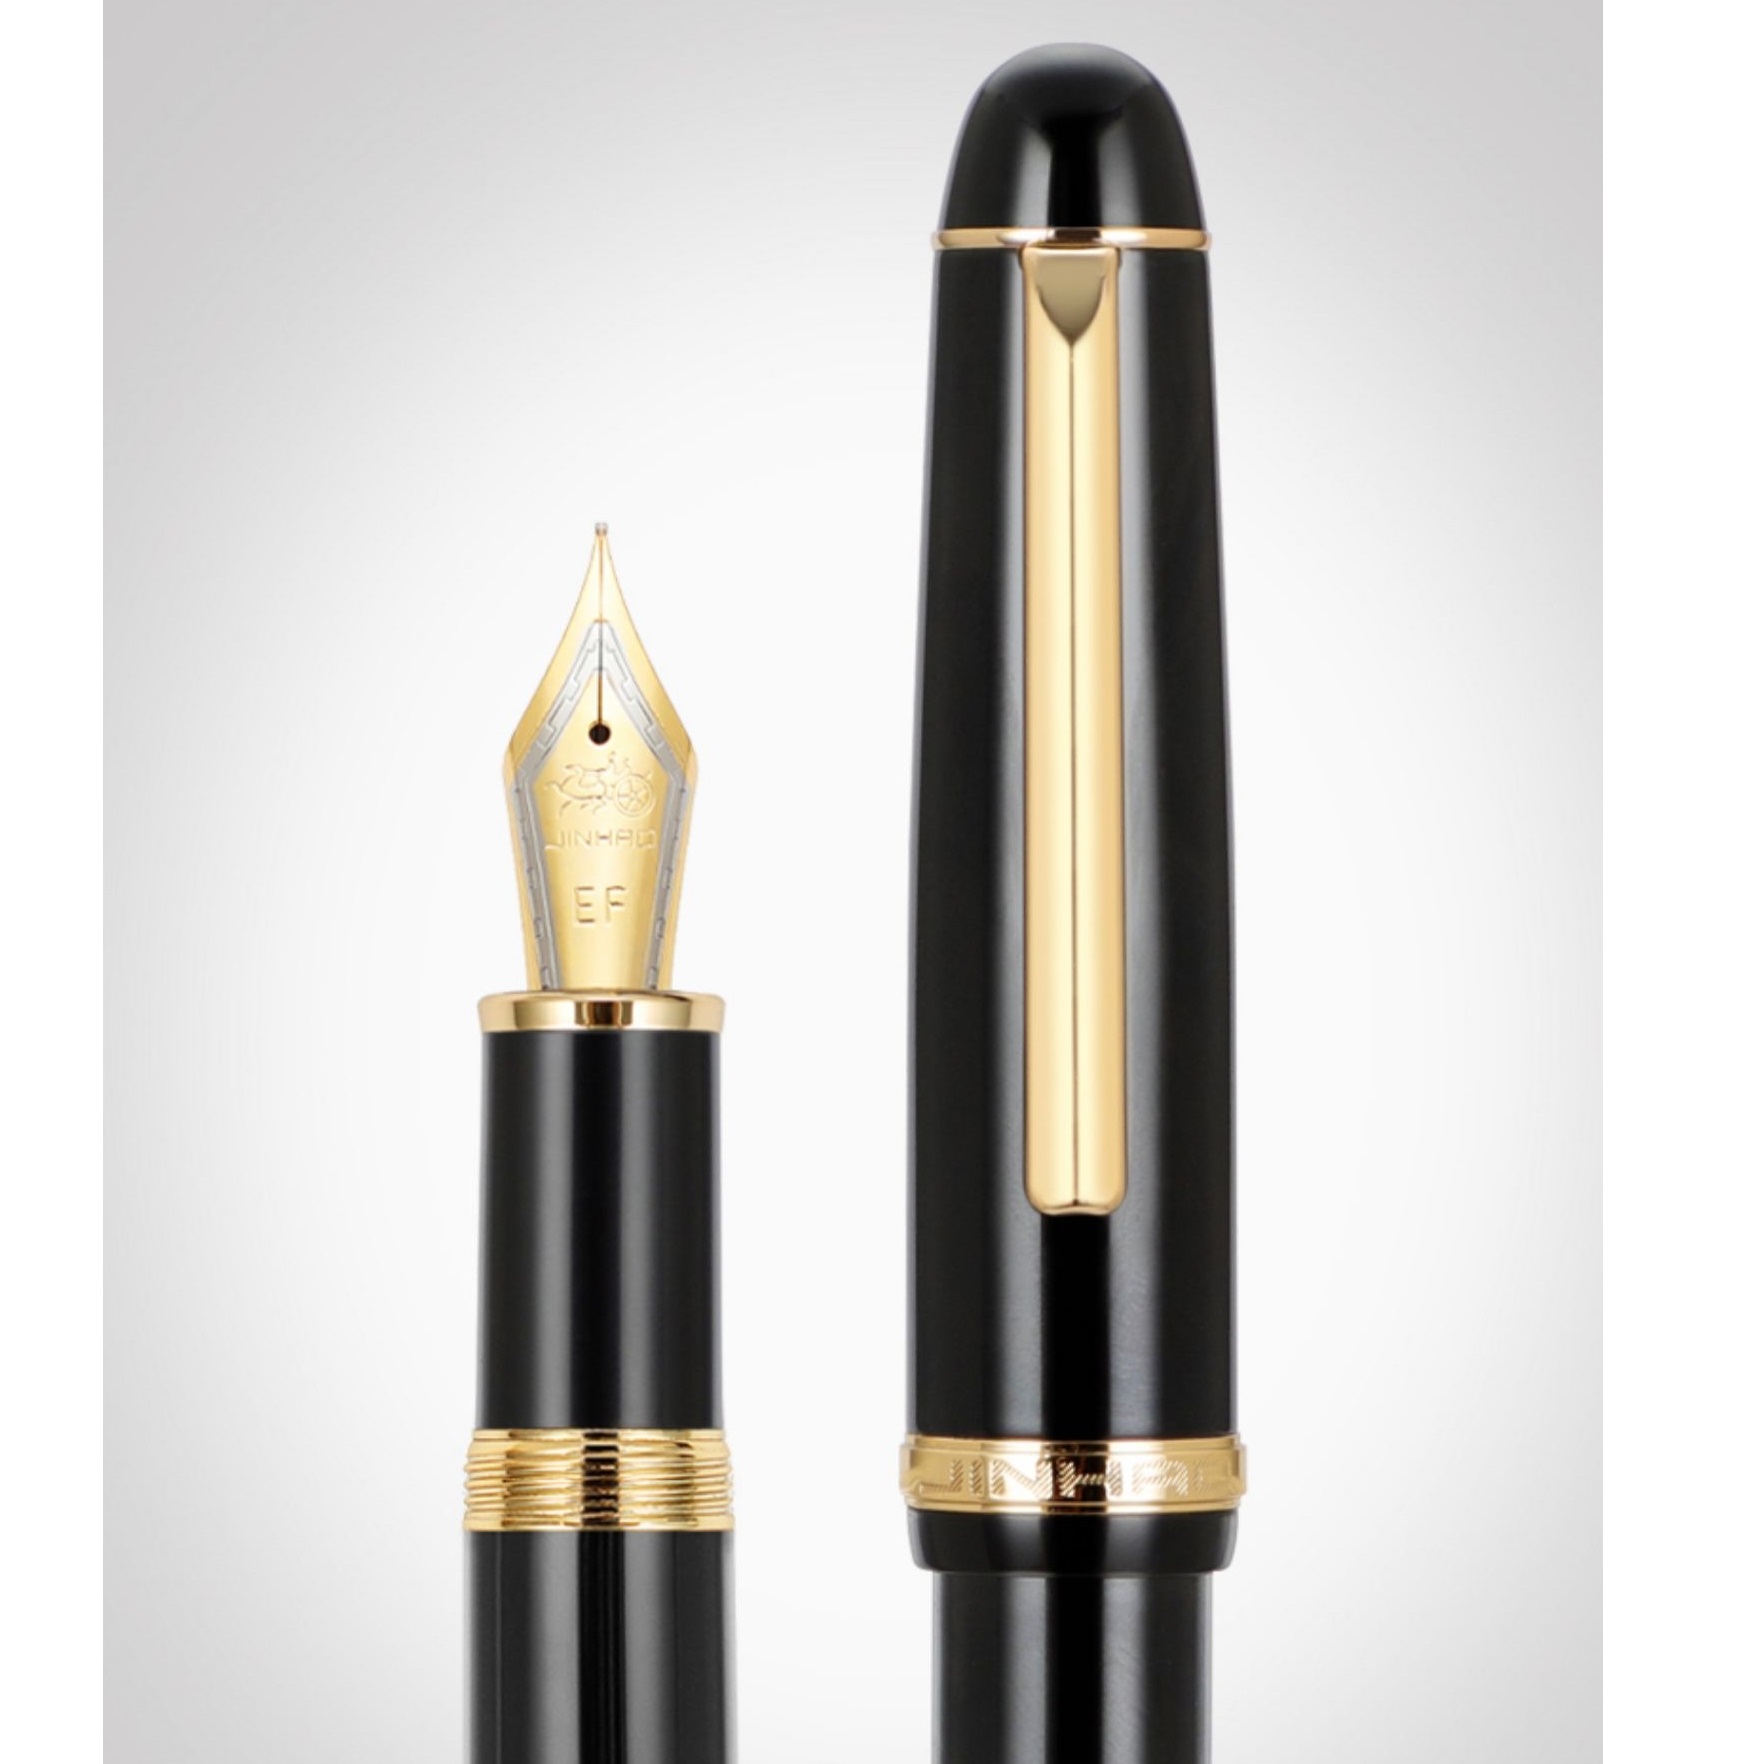 Jinhao X350 Fountain Pen Retro Elegant Fass Gold Clip Fine / Medium NIB zum Schreiben von Signature Office School A7345